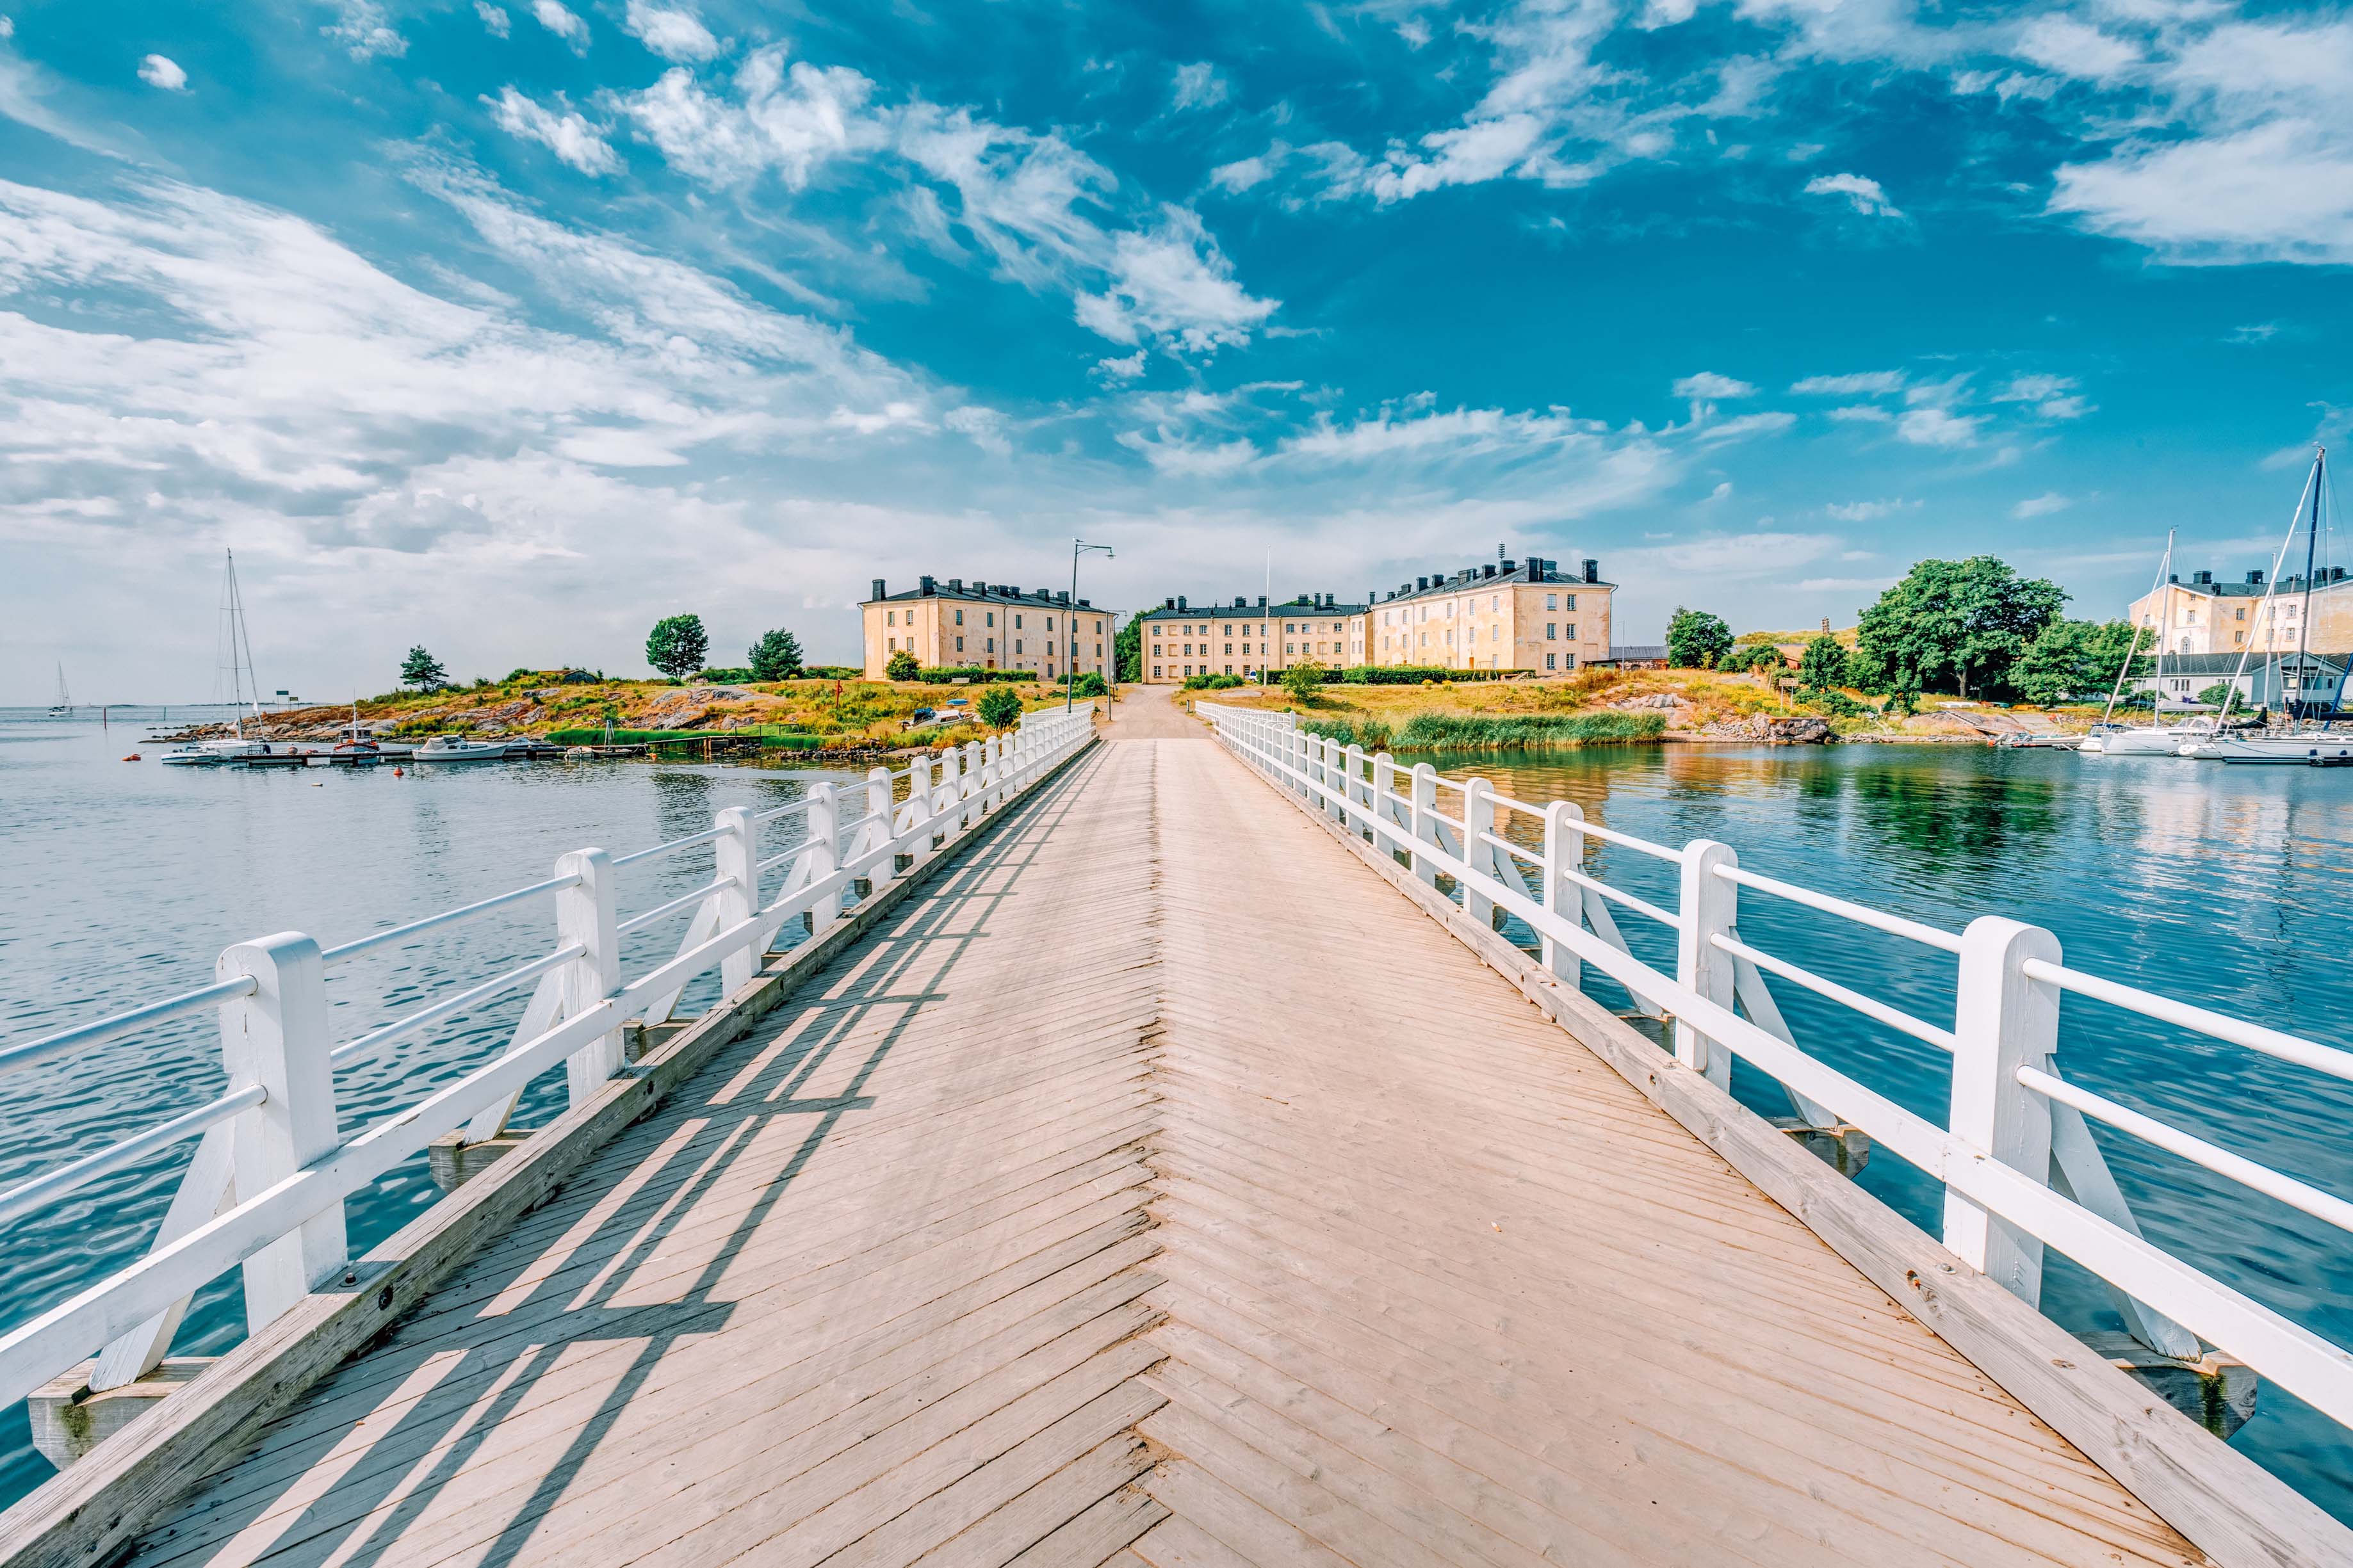 Panoramabild einer Brücke, die zur Festungsinsel Suomenlinna führt